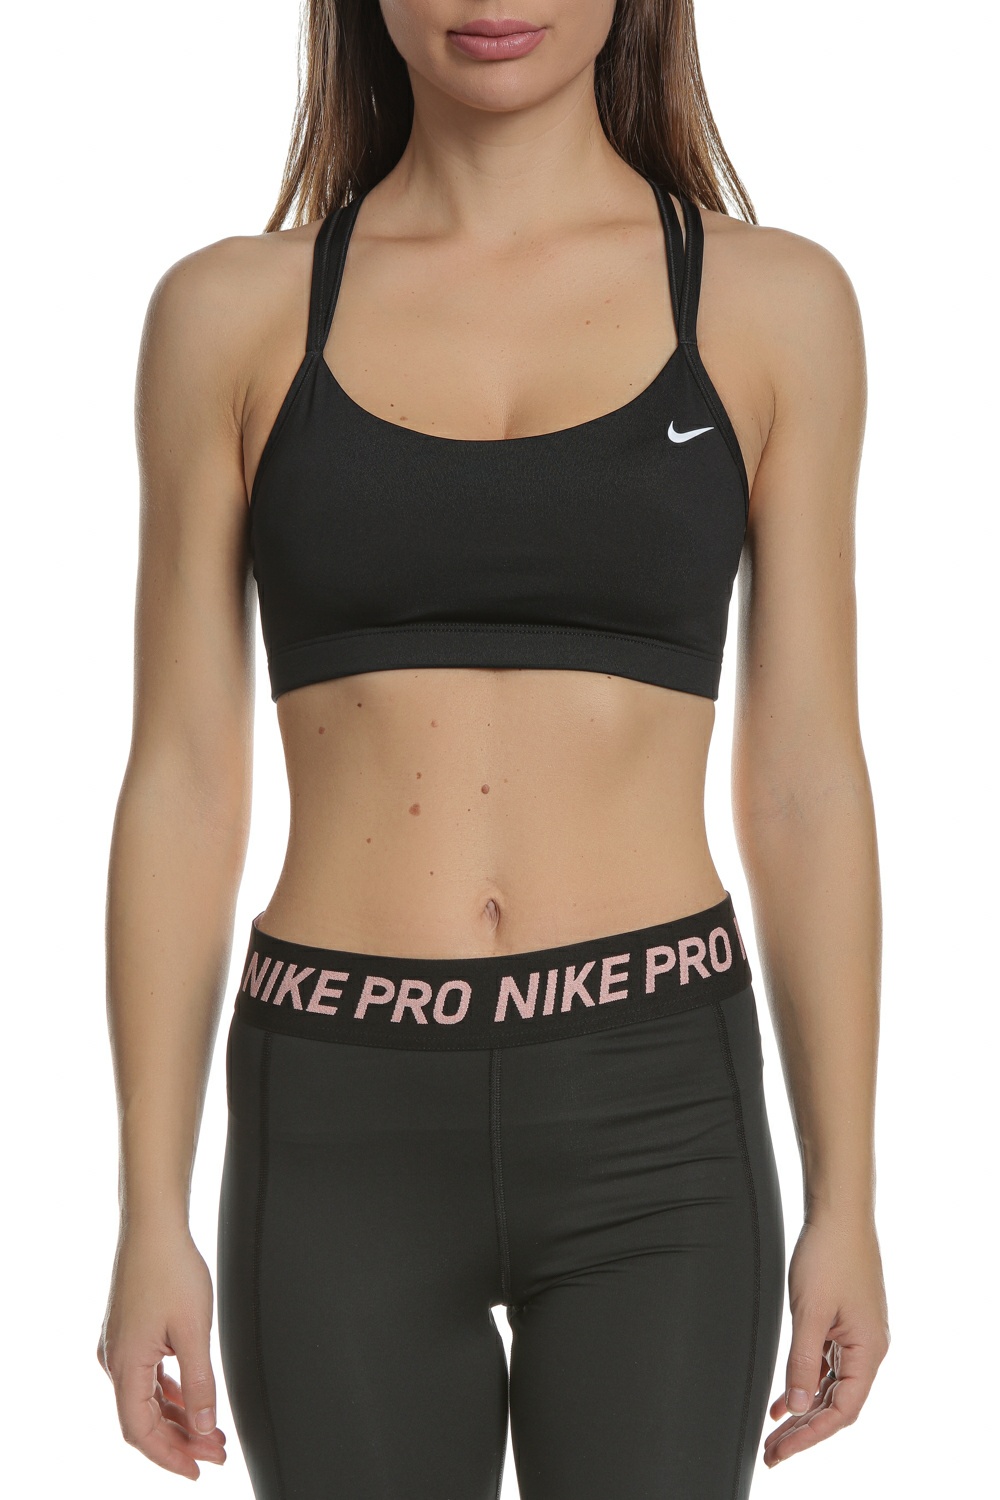 NIKE - Γυναικείο αθλητικό μπουστάκι NIKE FAVORITES STRAPPY BRA μαύρο Γυναικεία/Ρούχα/Αθλητικά/Μπουστάκια